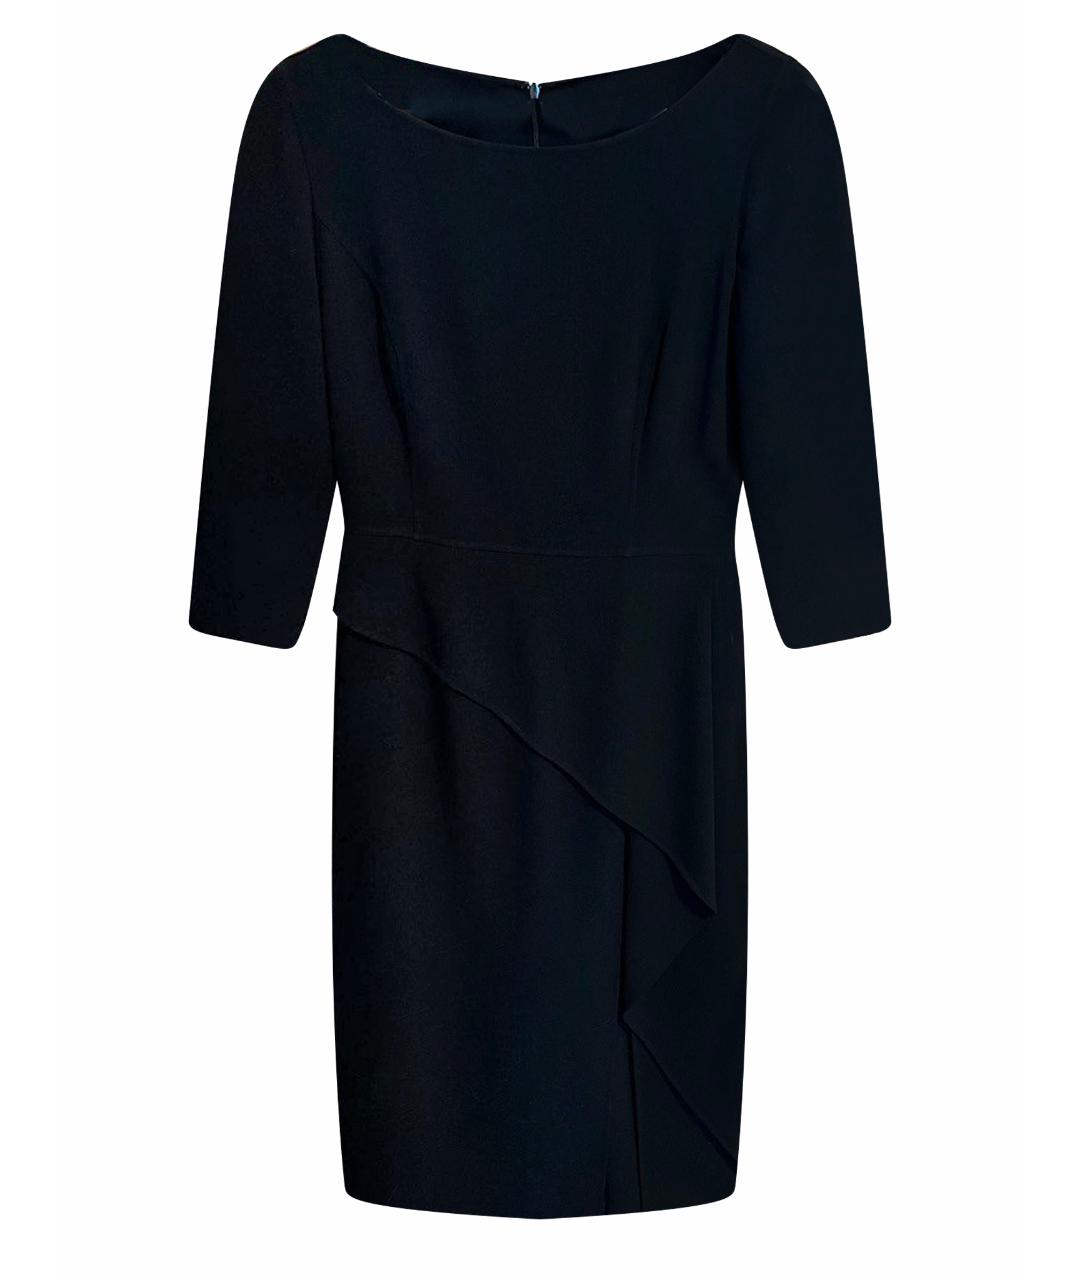 MICHAEL KORS Черное шерстяное вечернее платье, фото 1